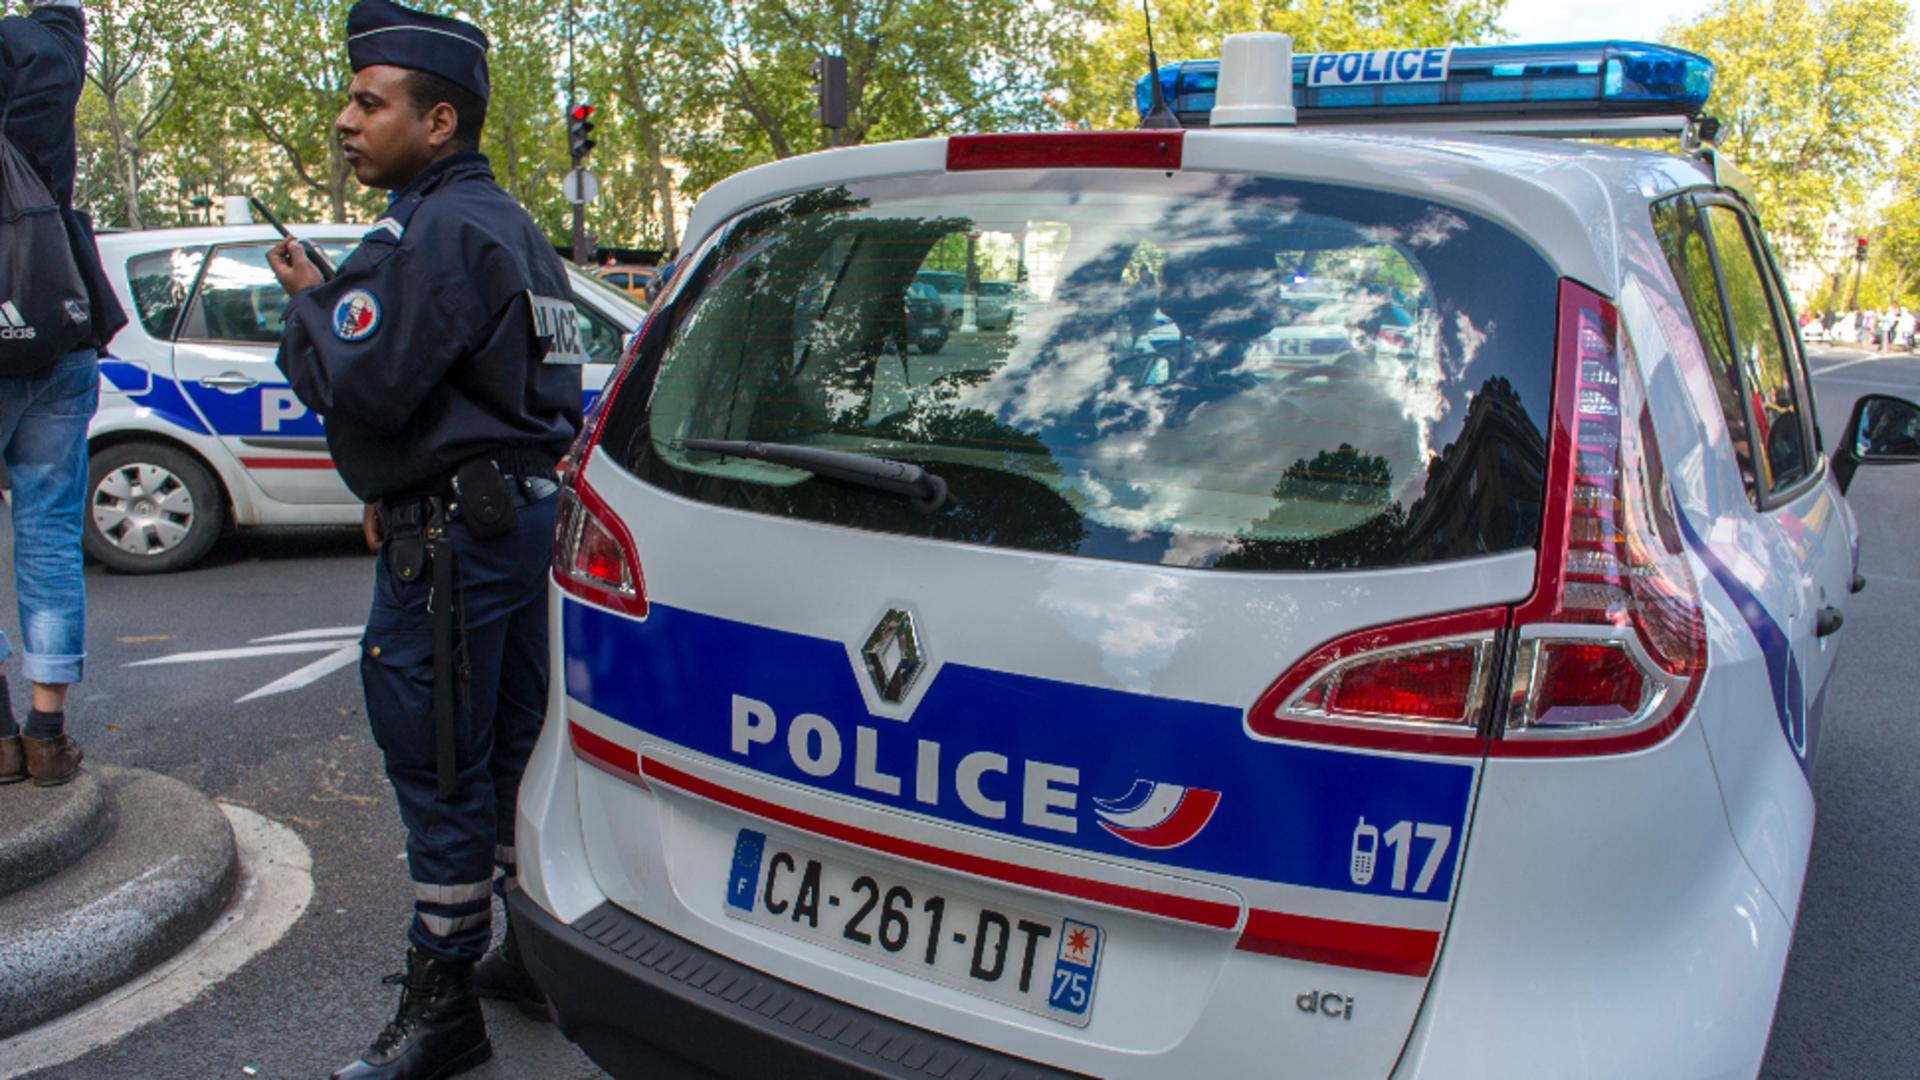 Atac armat în Franța. Un om a murit, iar alte 3 persoane sunt grav rănite